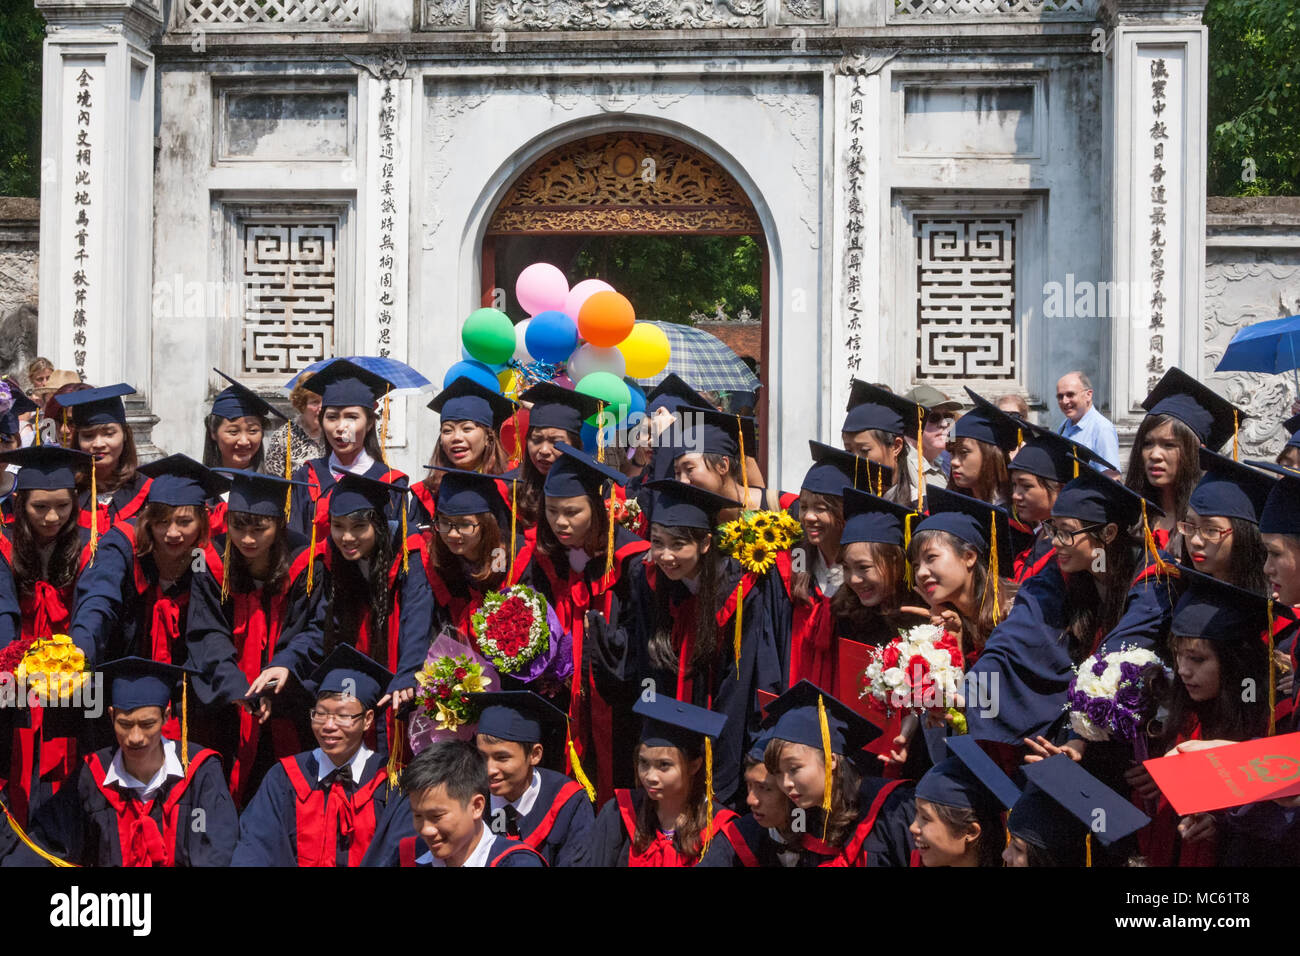 Gli studenti che festeggiano il loro diploma presso l'ingresso al Tempio della Letteratura, Hanoi, Viet Nam Foto Stock